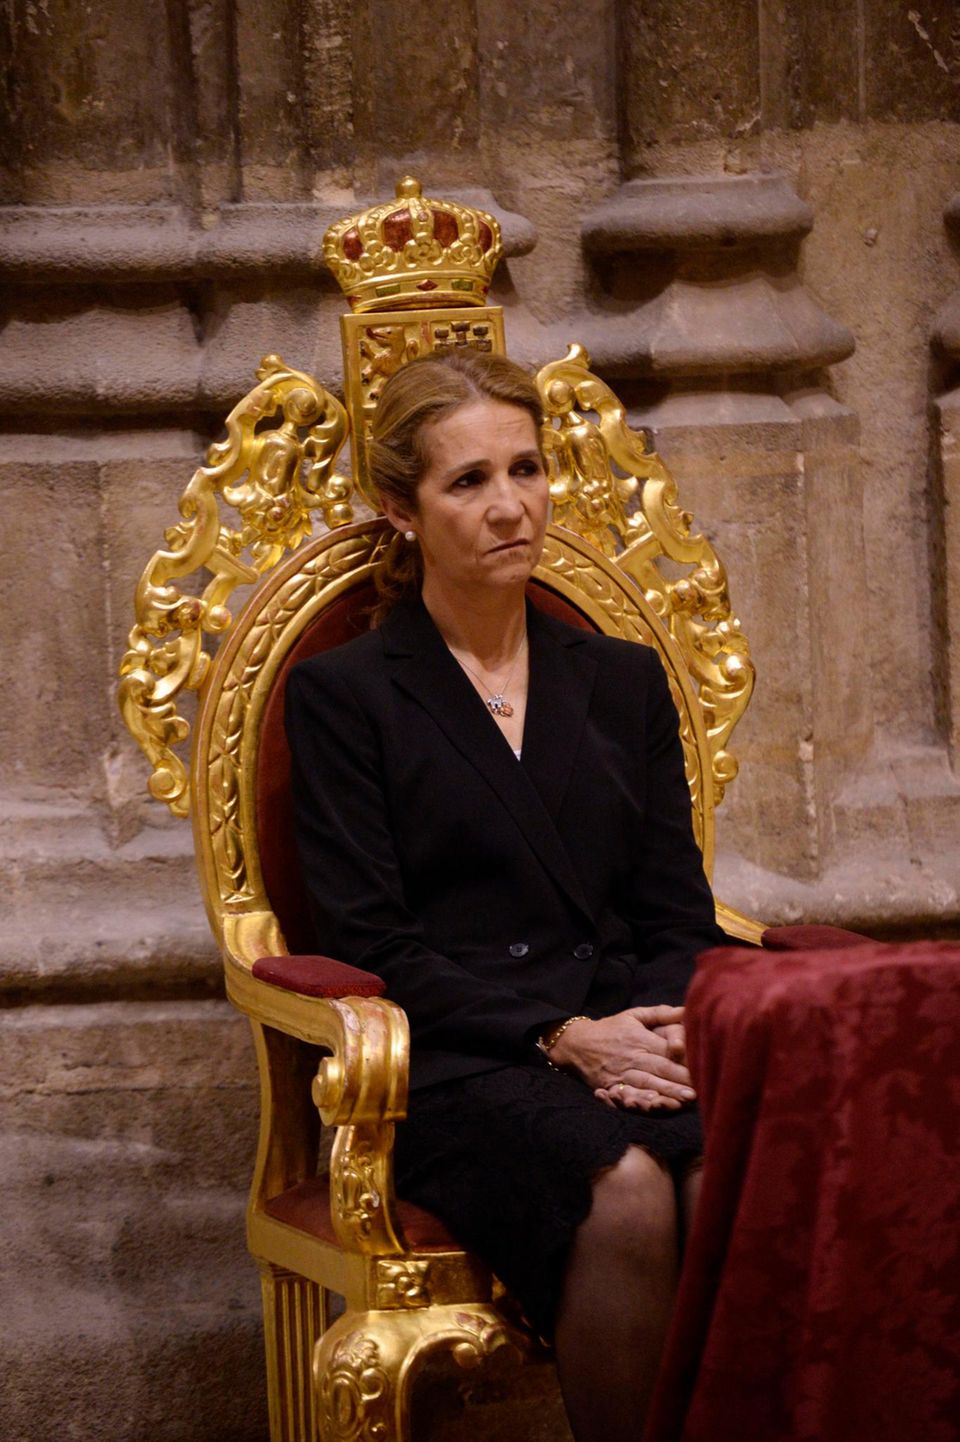 Sogar Prinzessin Elena ist zur Beerdigung gekommen - einer ihrer selten gewordenen Auftritte, da sie nicht mehr zur spanischen Königsfamilie zählt.